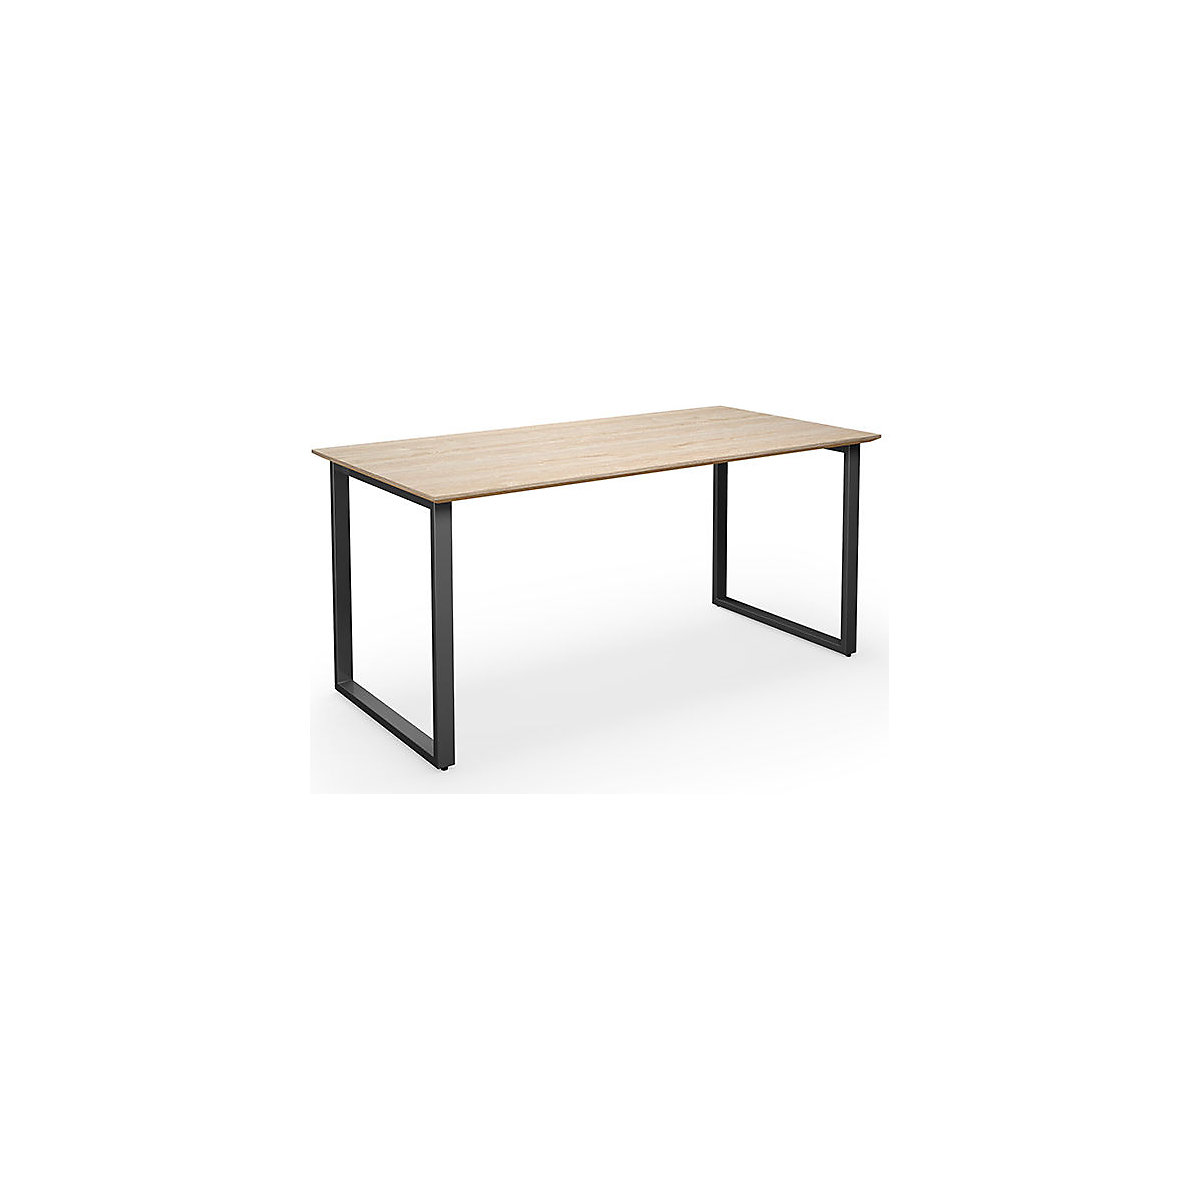 DUO-O Trend multi-purpose desk, straight tabletop